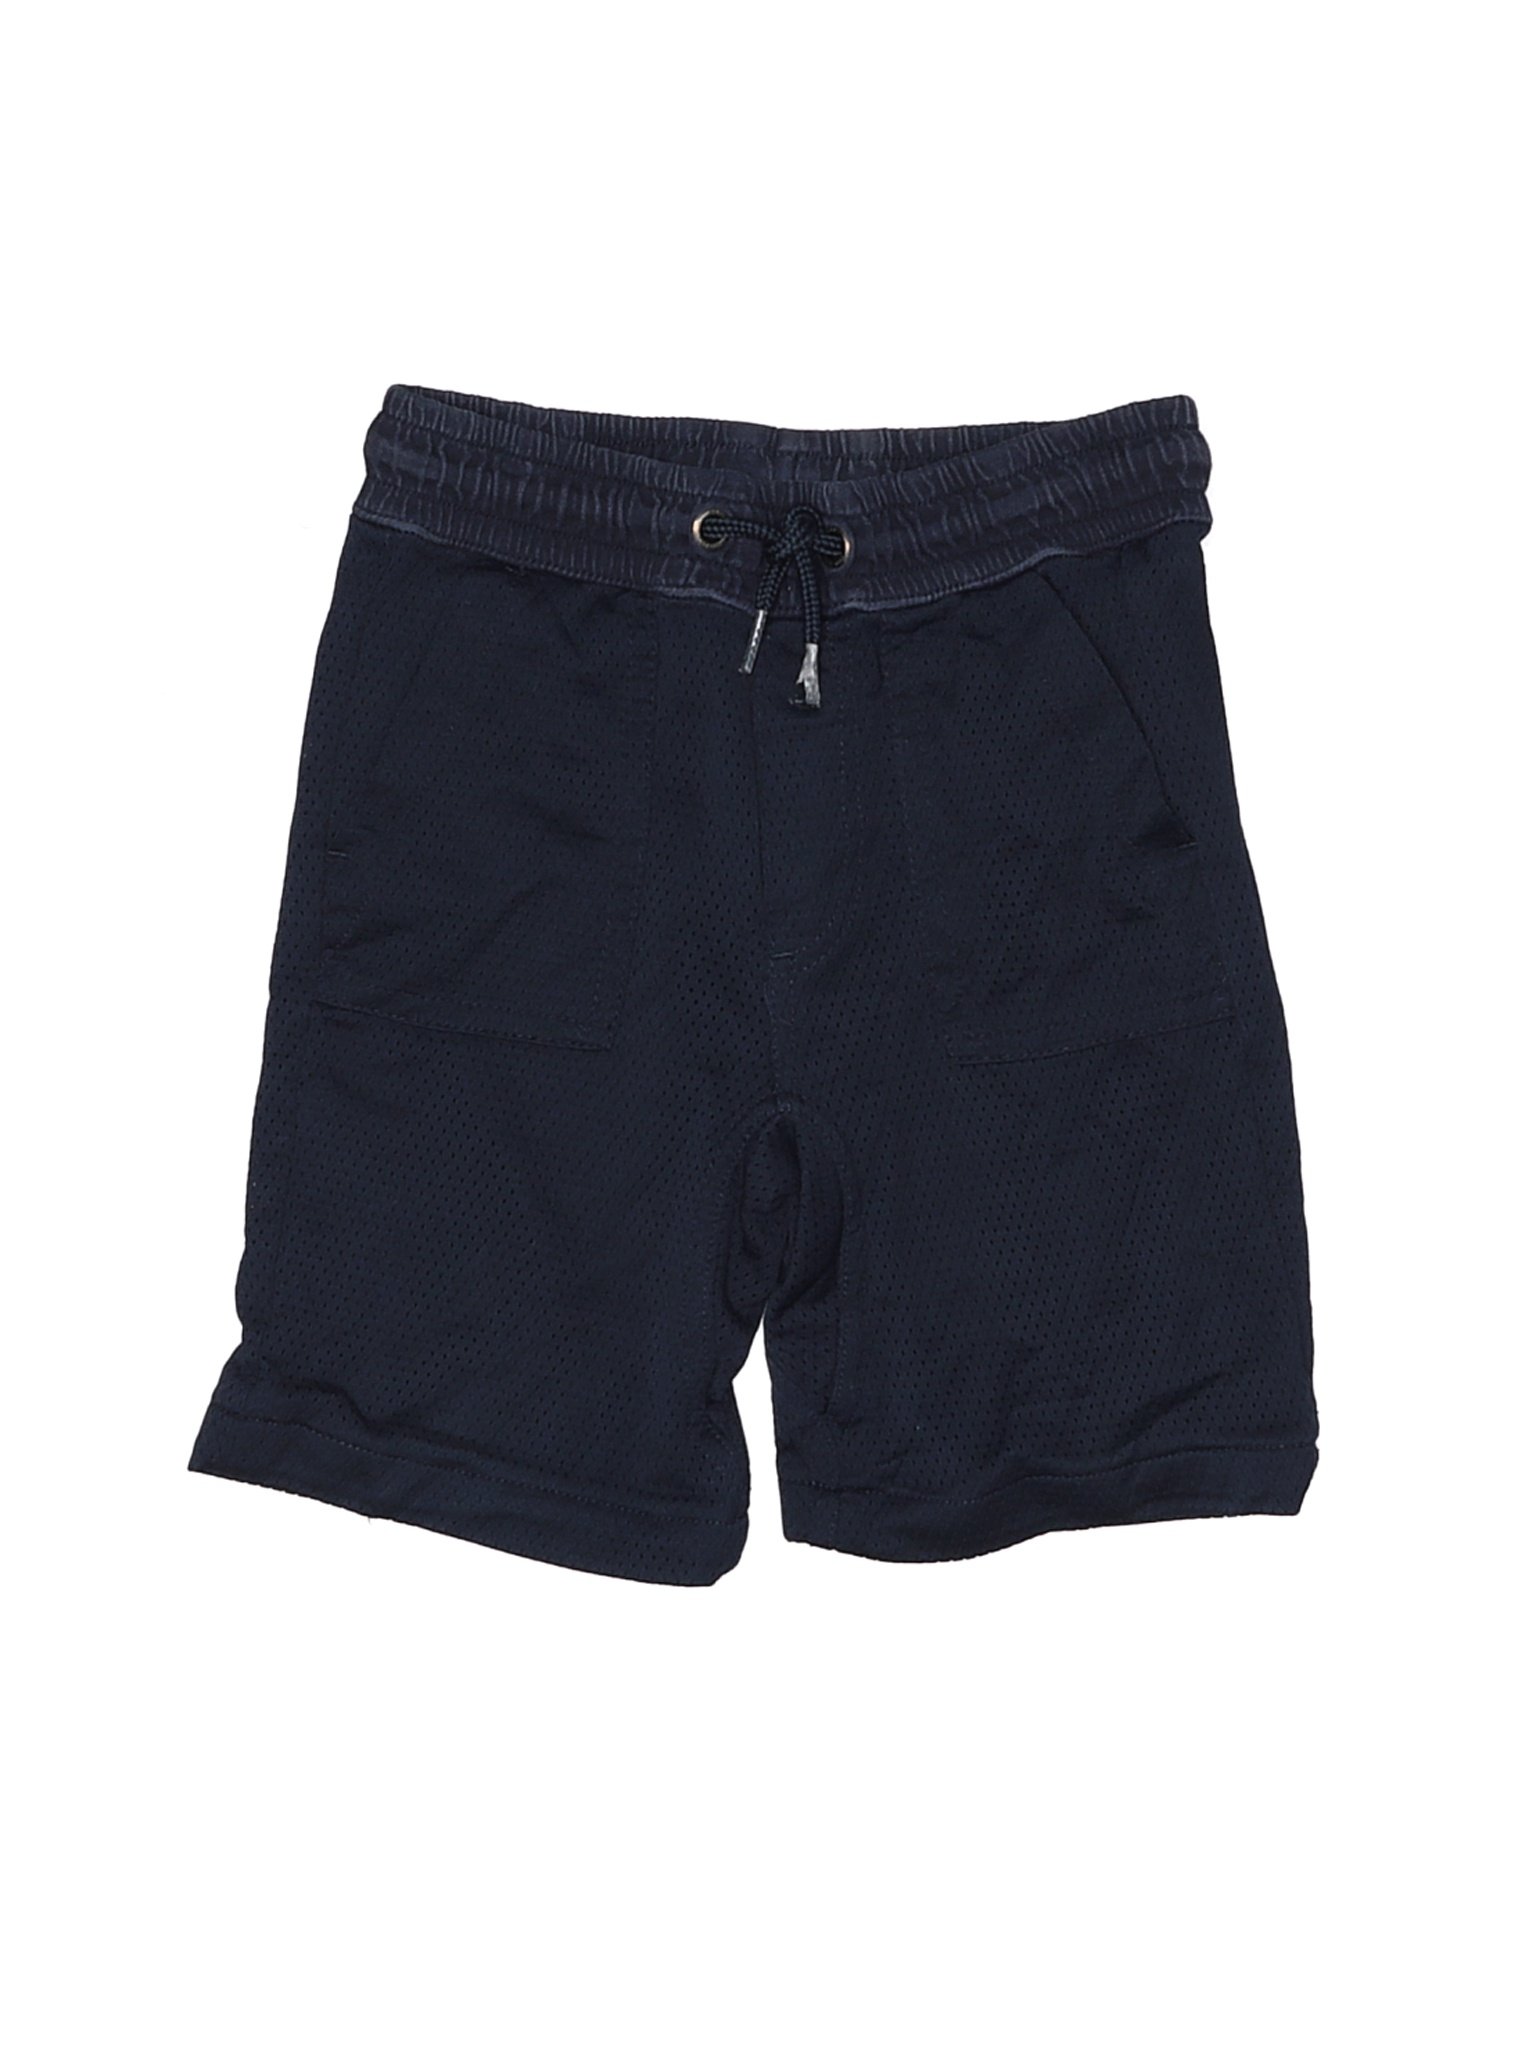 Baby Gap Boys Black Shorts 3 | eBay